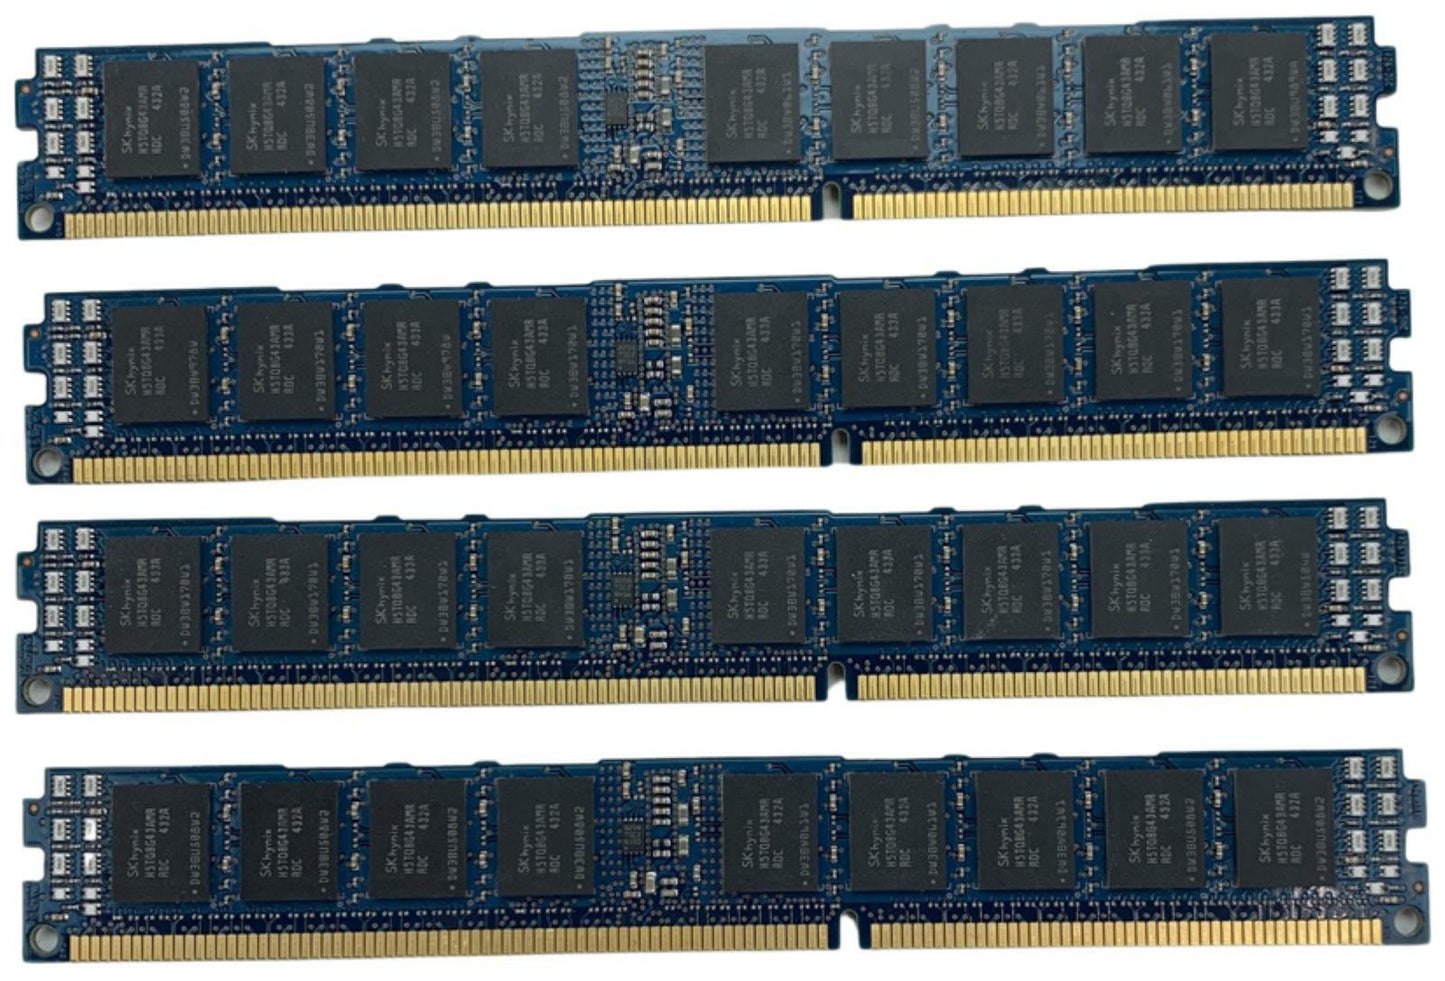 Lot of 4 - Hynix / IBM HMT82GV7AMR4C-RD T8 AB 432 16GB DDR3 SDRAM PC3-14900 RAM